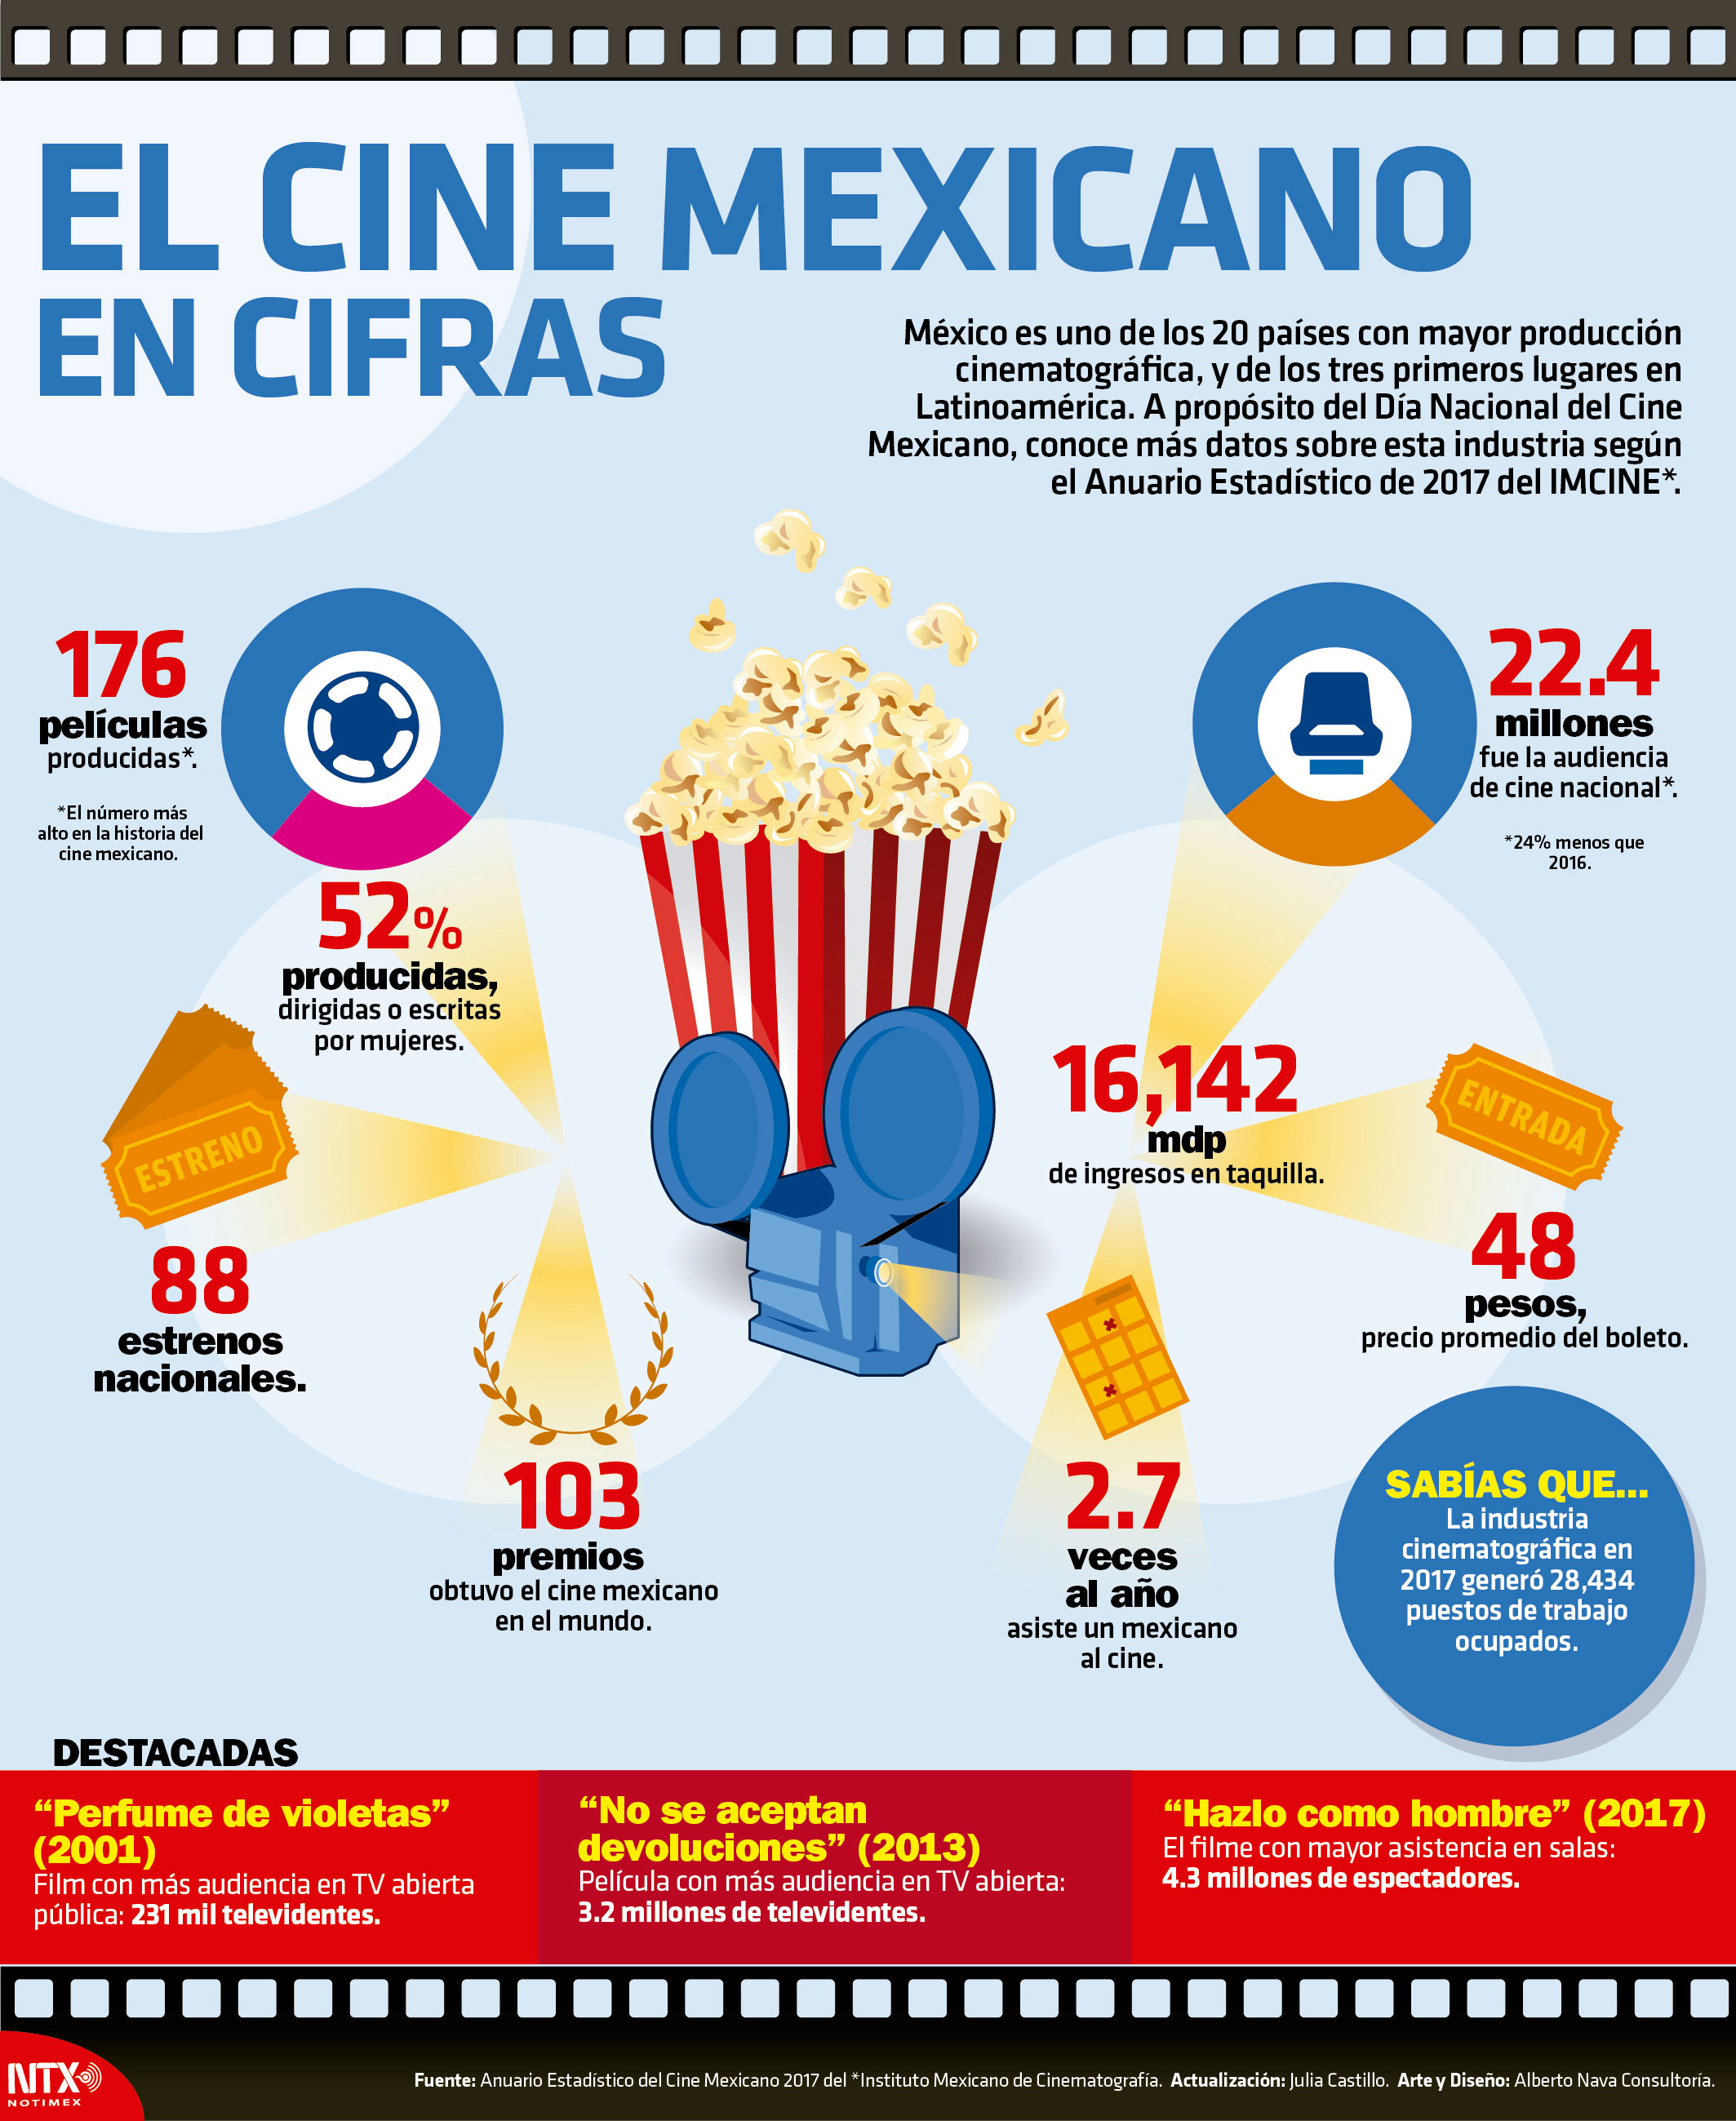 El cine mexicano en cifras